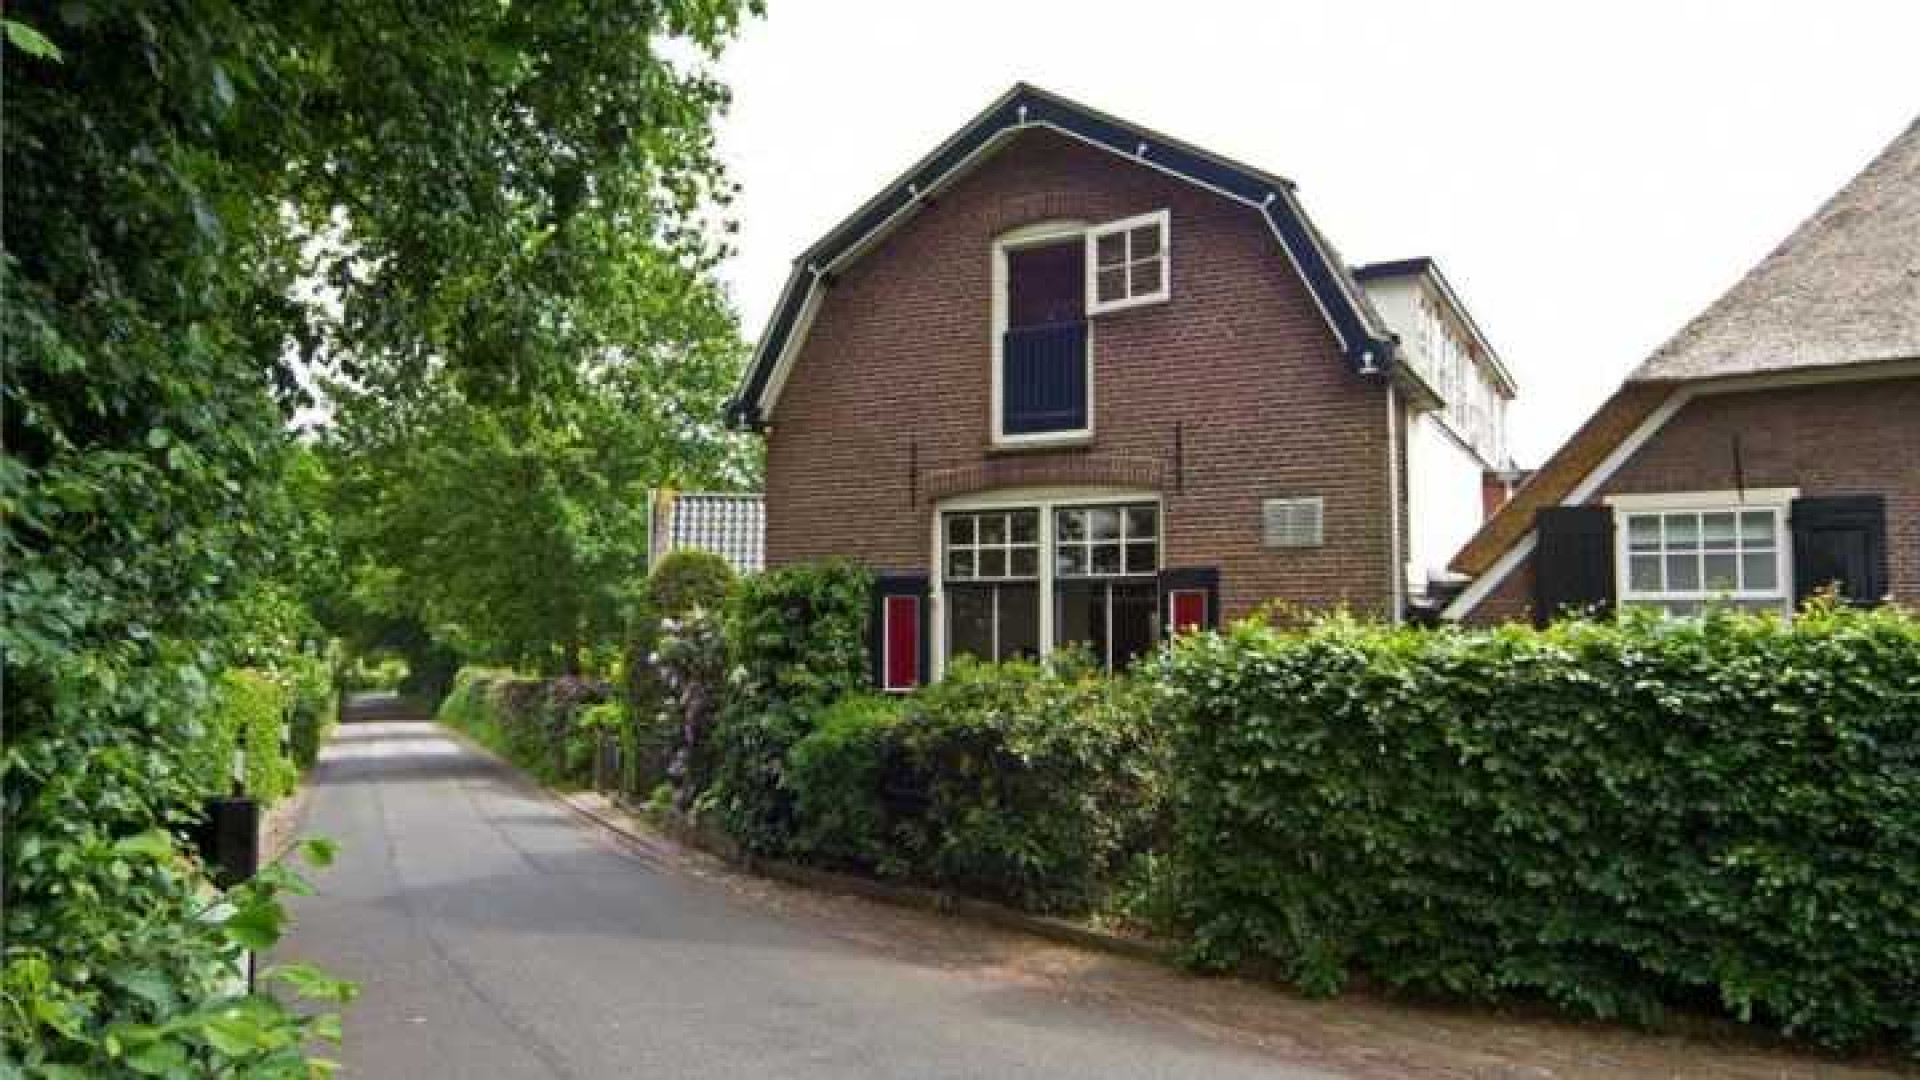 Herman van Veen verlaagt vraagprijs van zijn huis. Zie foto's 1